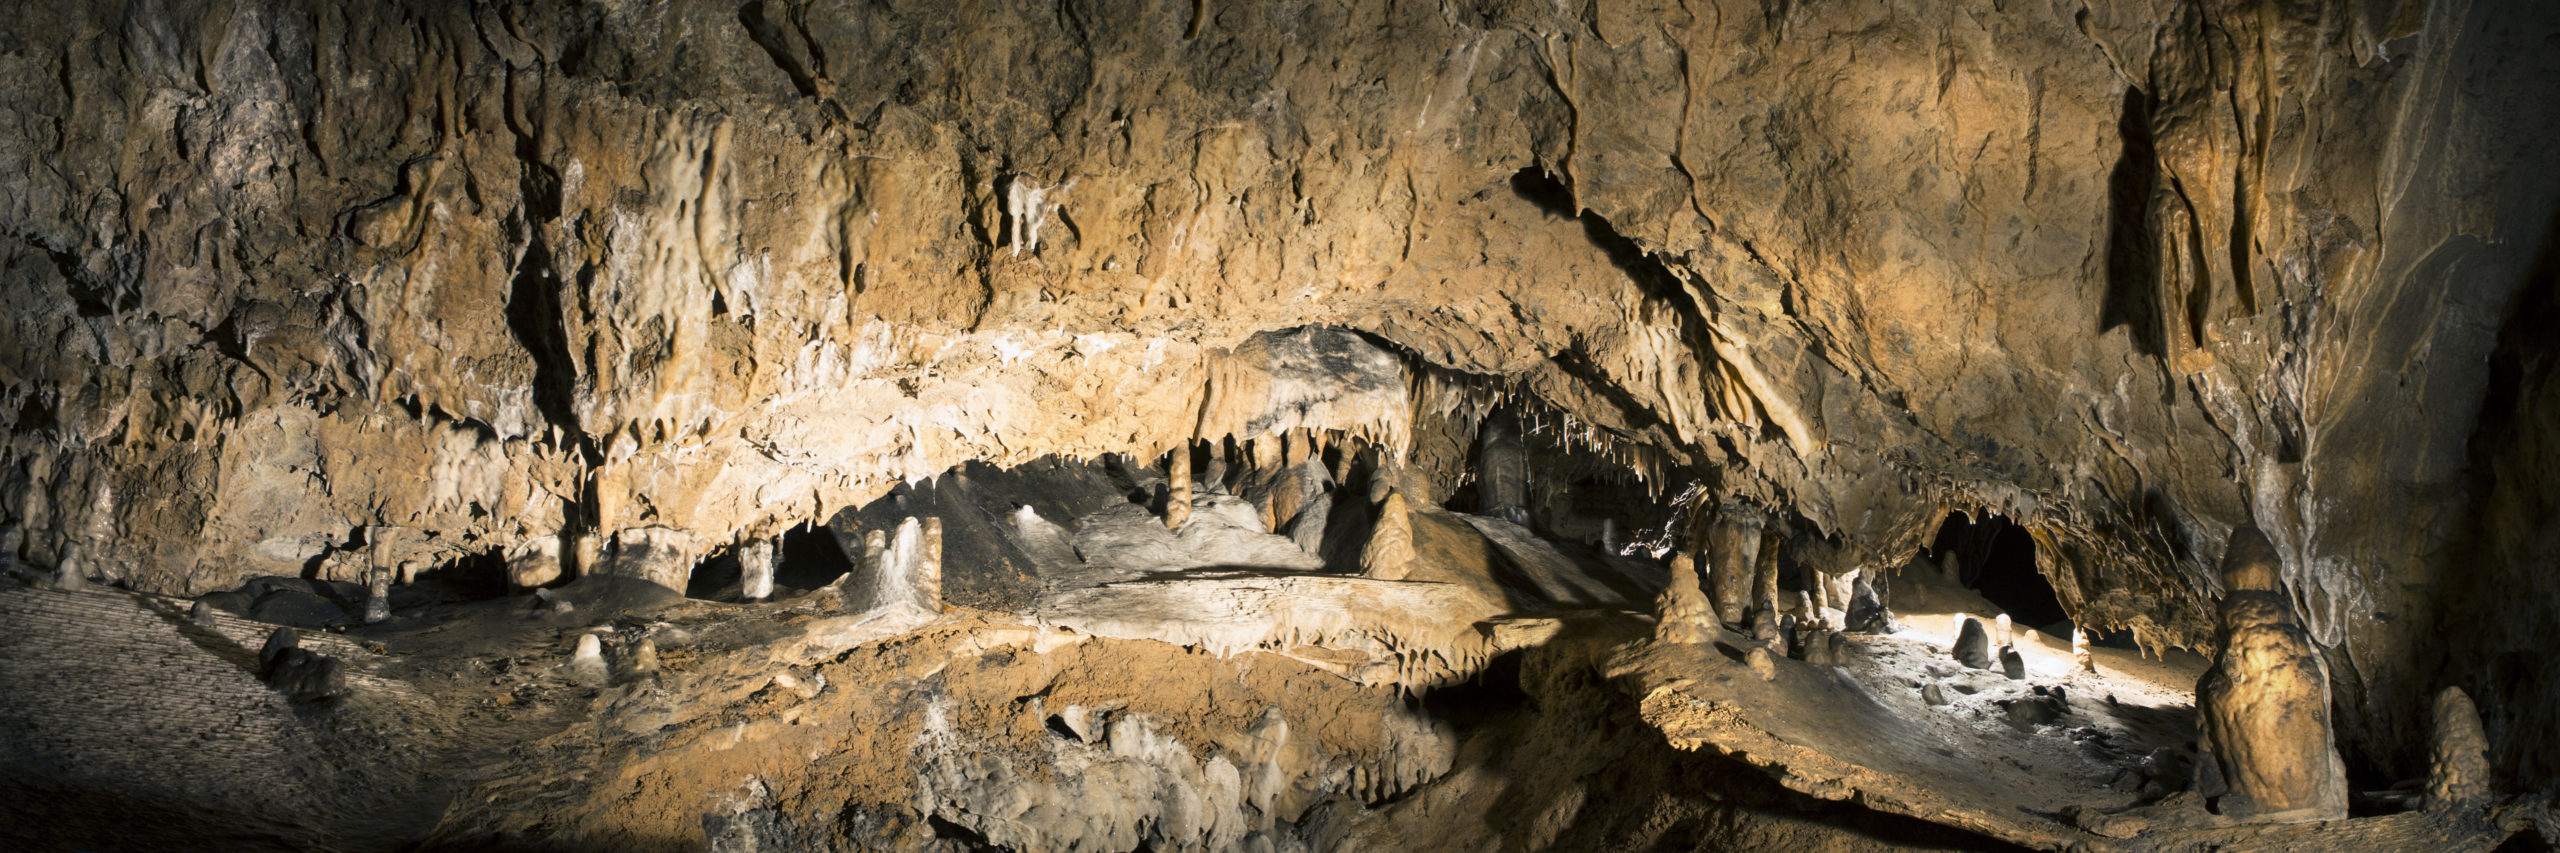 Grotte de Comblain - Salle de la Créche ©Eric Bertrand